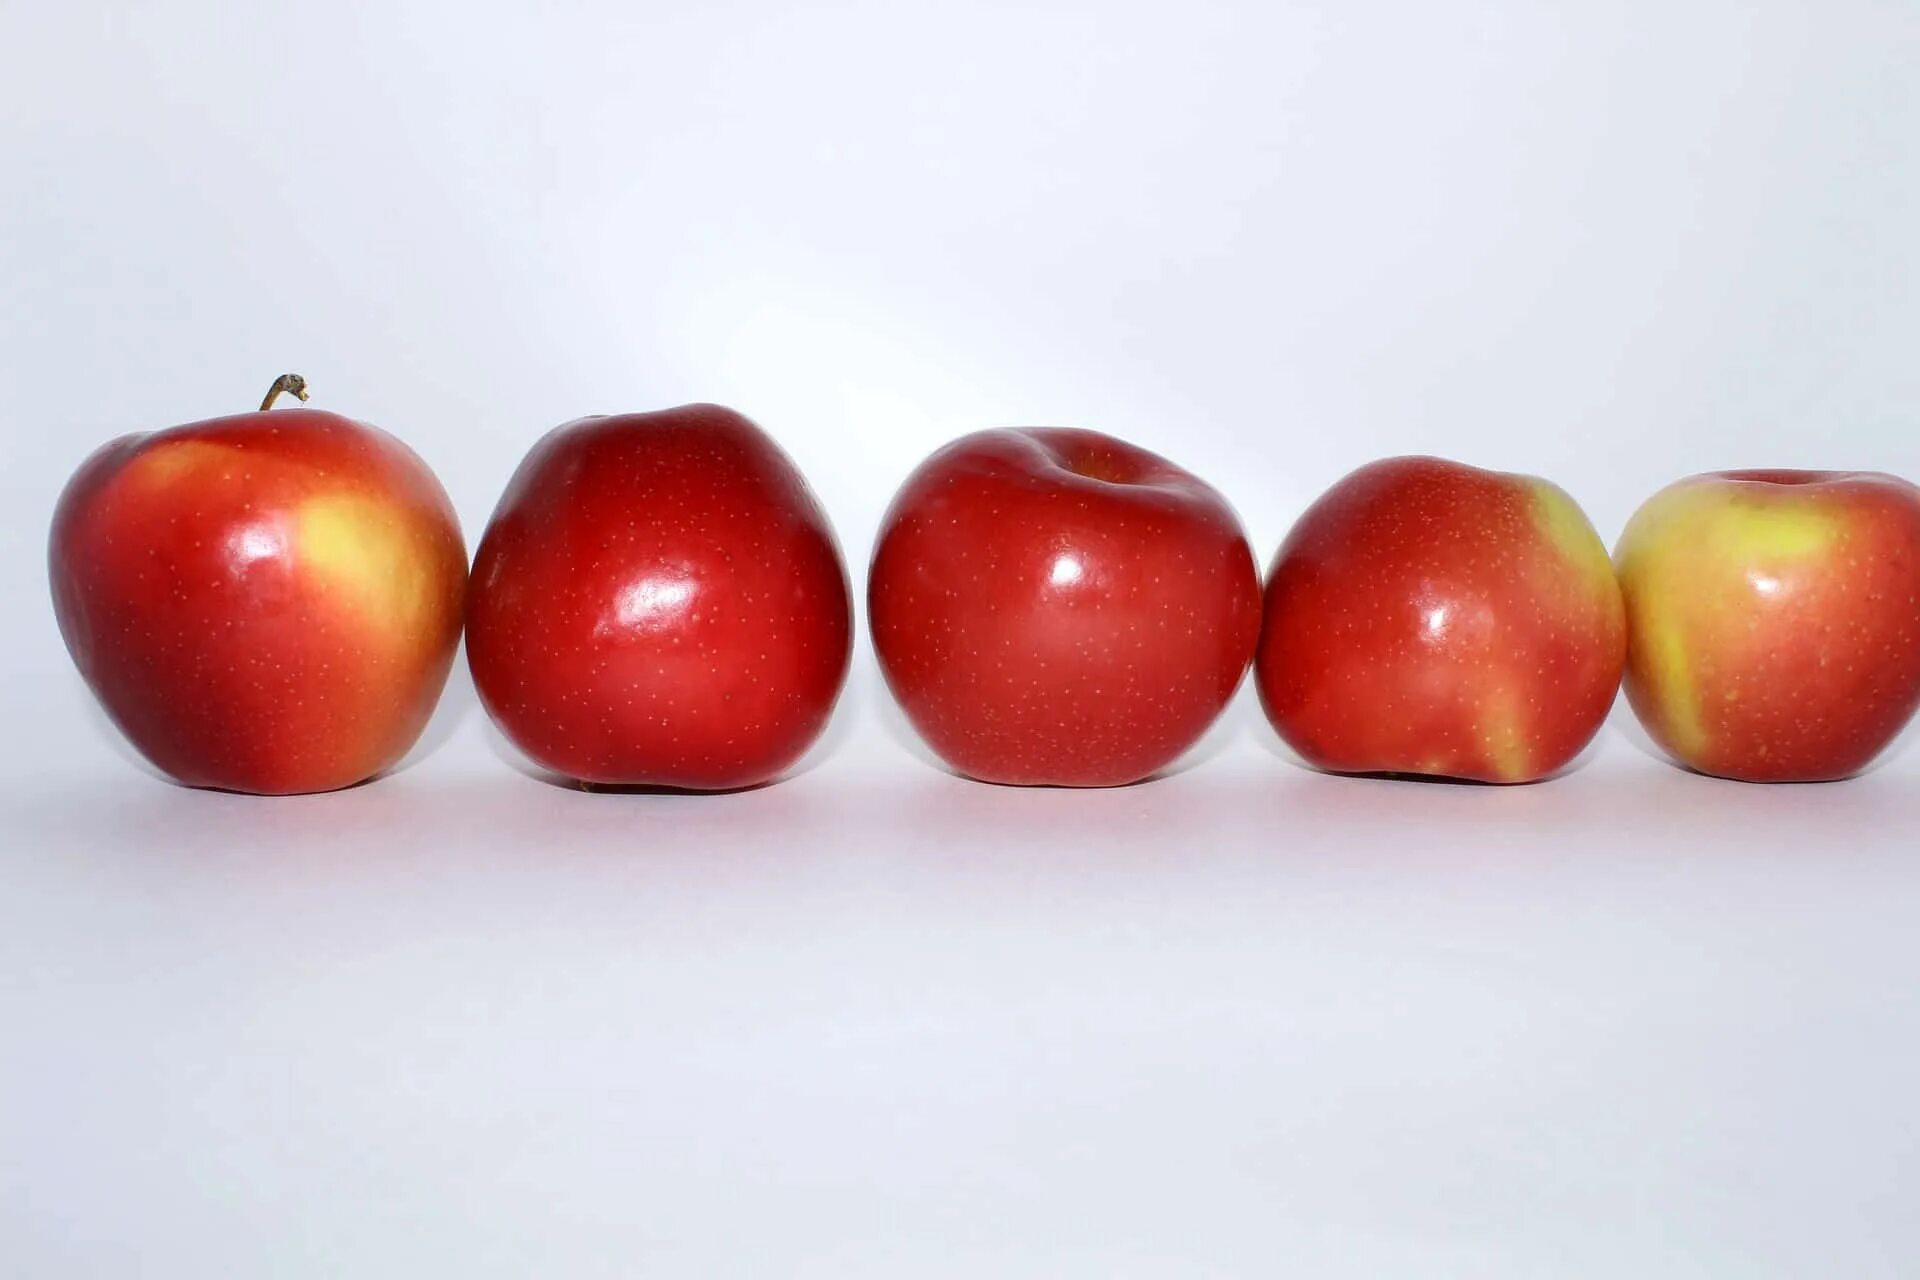 Четверо яблок. Яблоки красные. Яблоки в ряд. Разноцветные яблоки. Яблоки разного цвета.